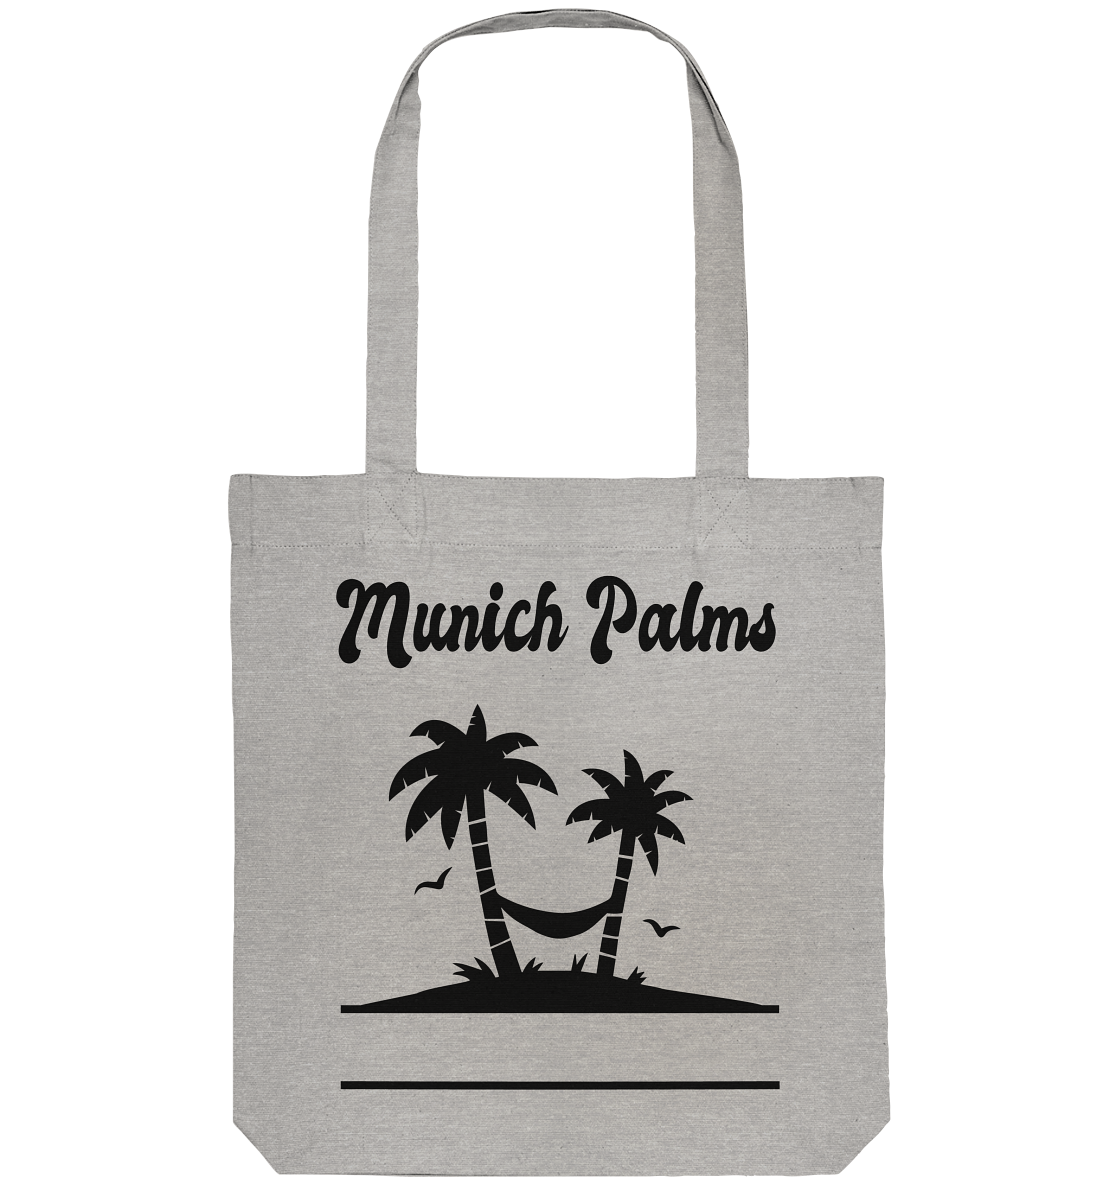 Design Munich Palms - Organic Tote Bag